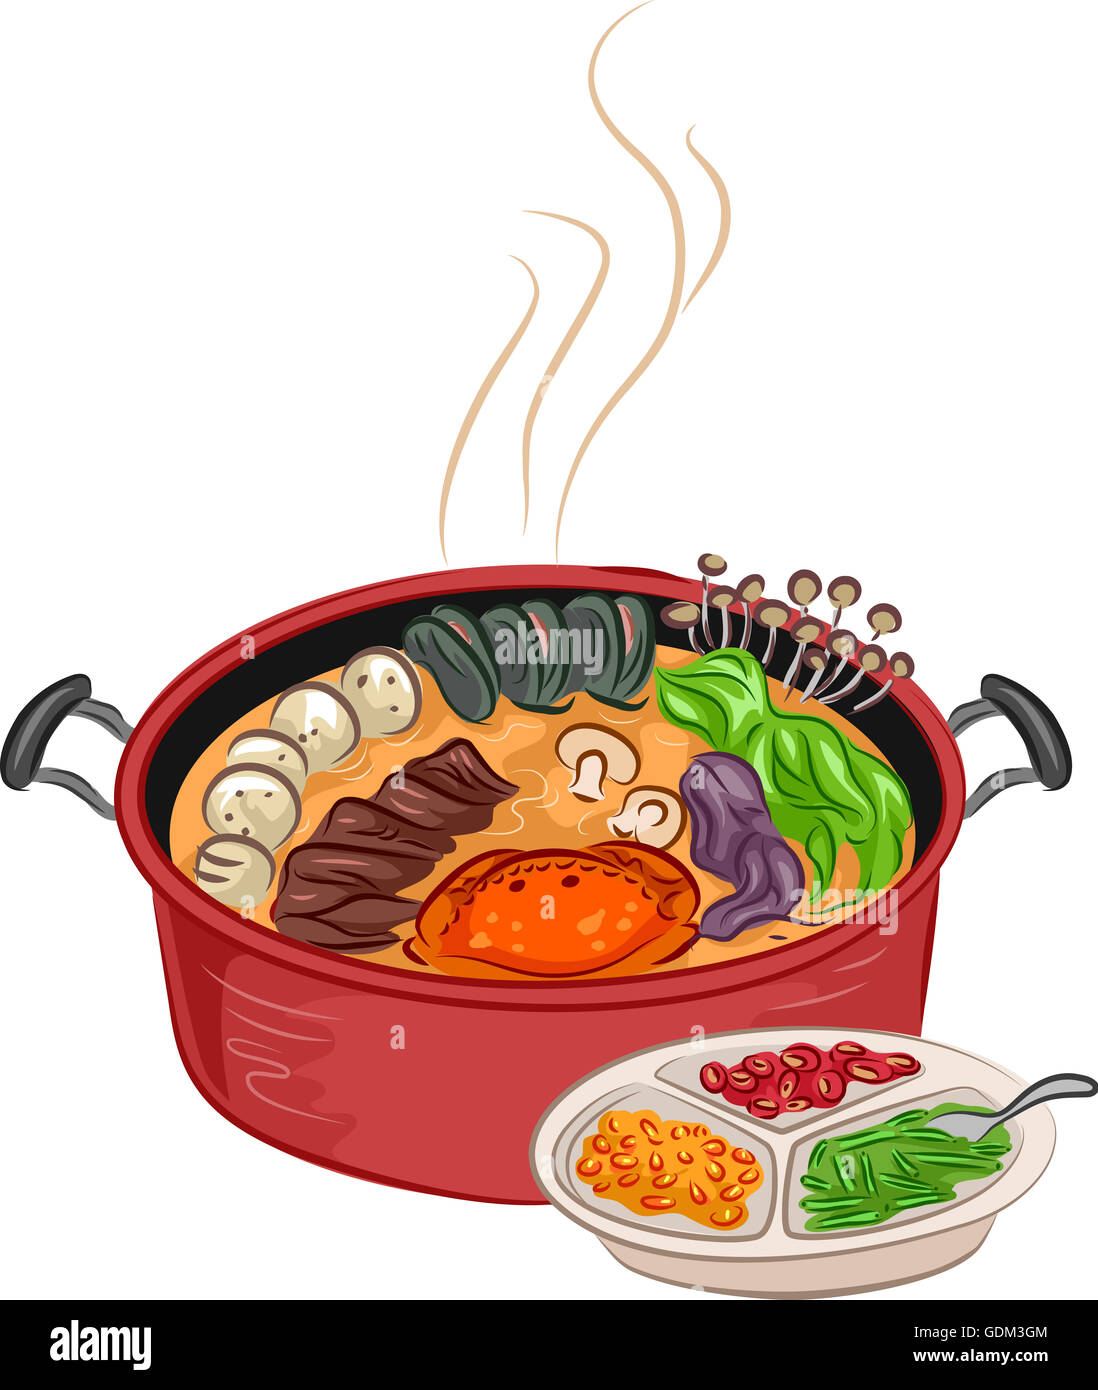 Ilustración de una humeante olla caliente con ingredientes adicionales sentados junto a ella Foto de stock